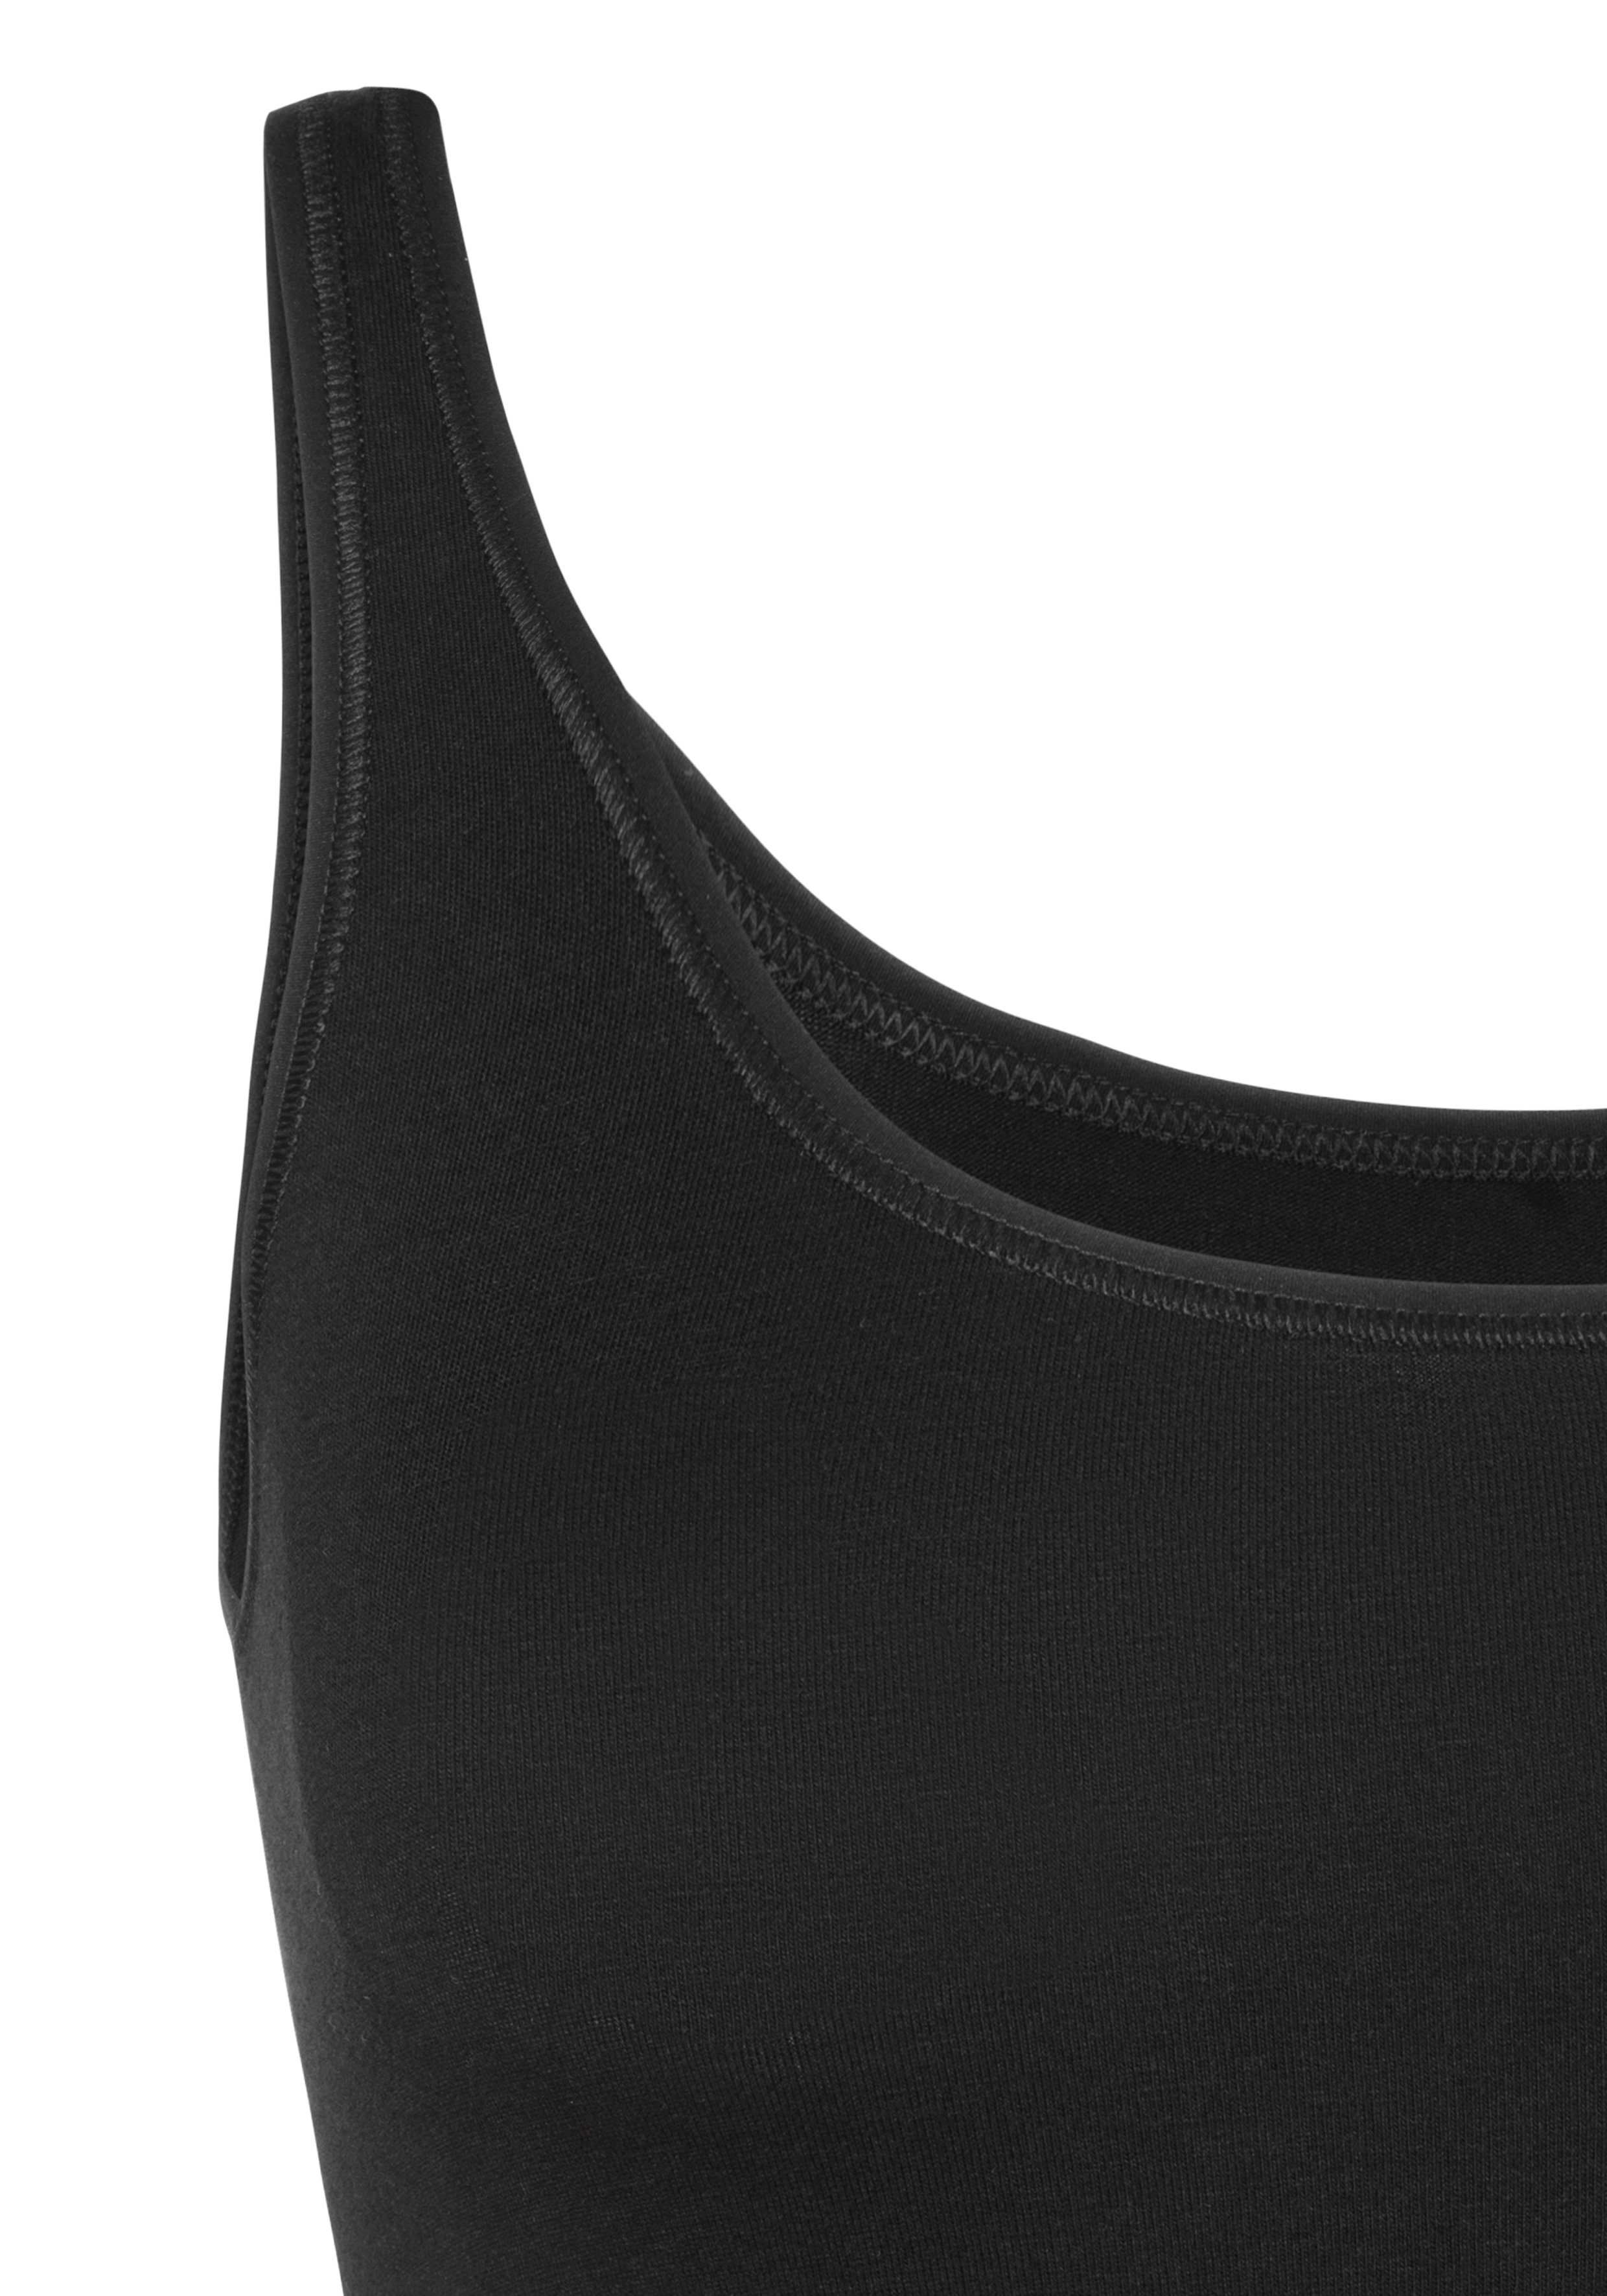 (2er-Pack) Single-Jersey-Qualität elastischer Schiesser mit Unterhemd schwarz/sand